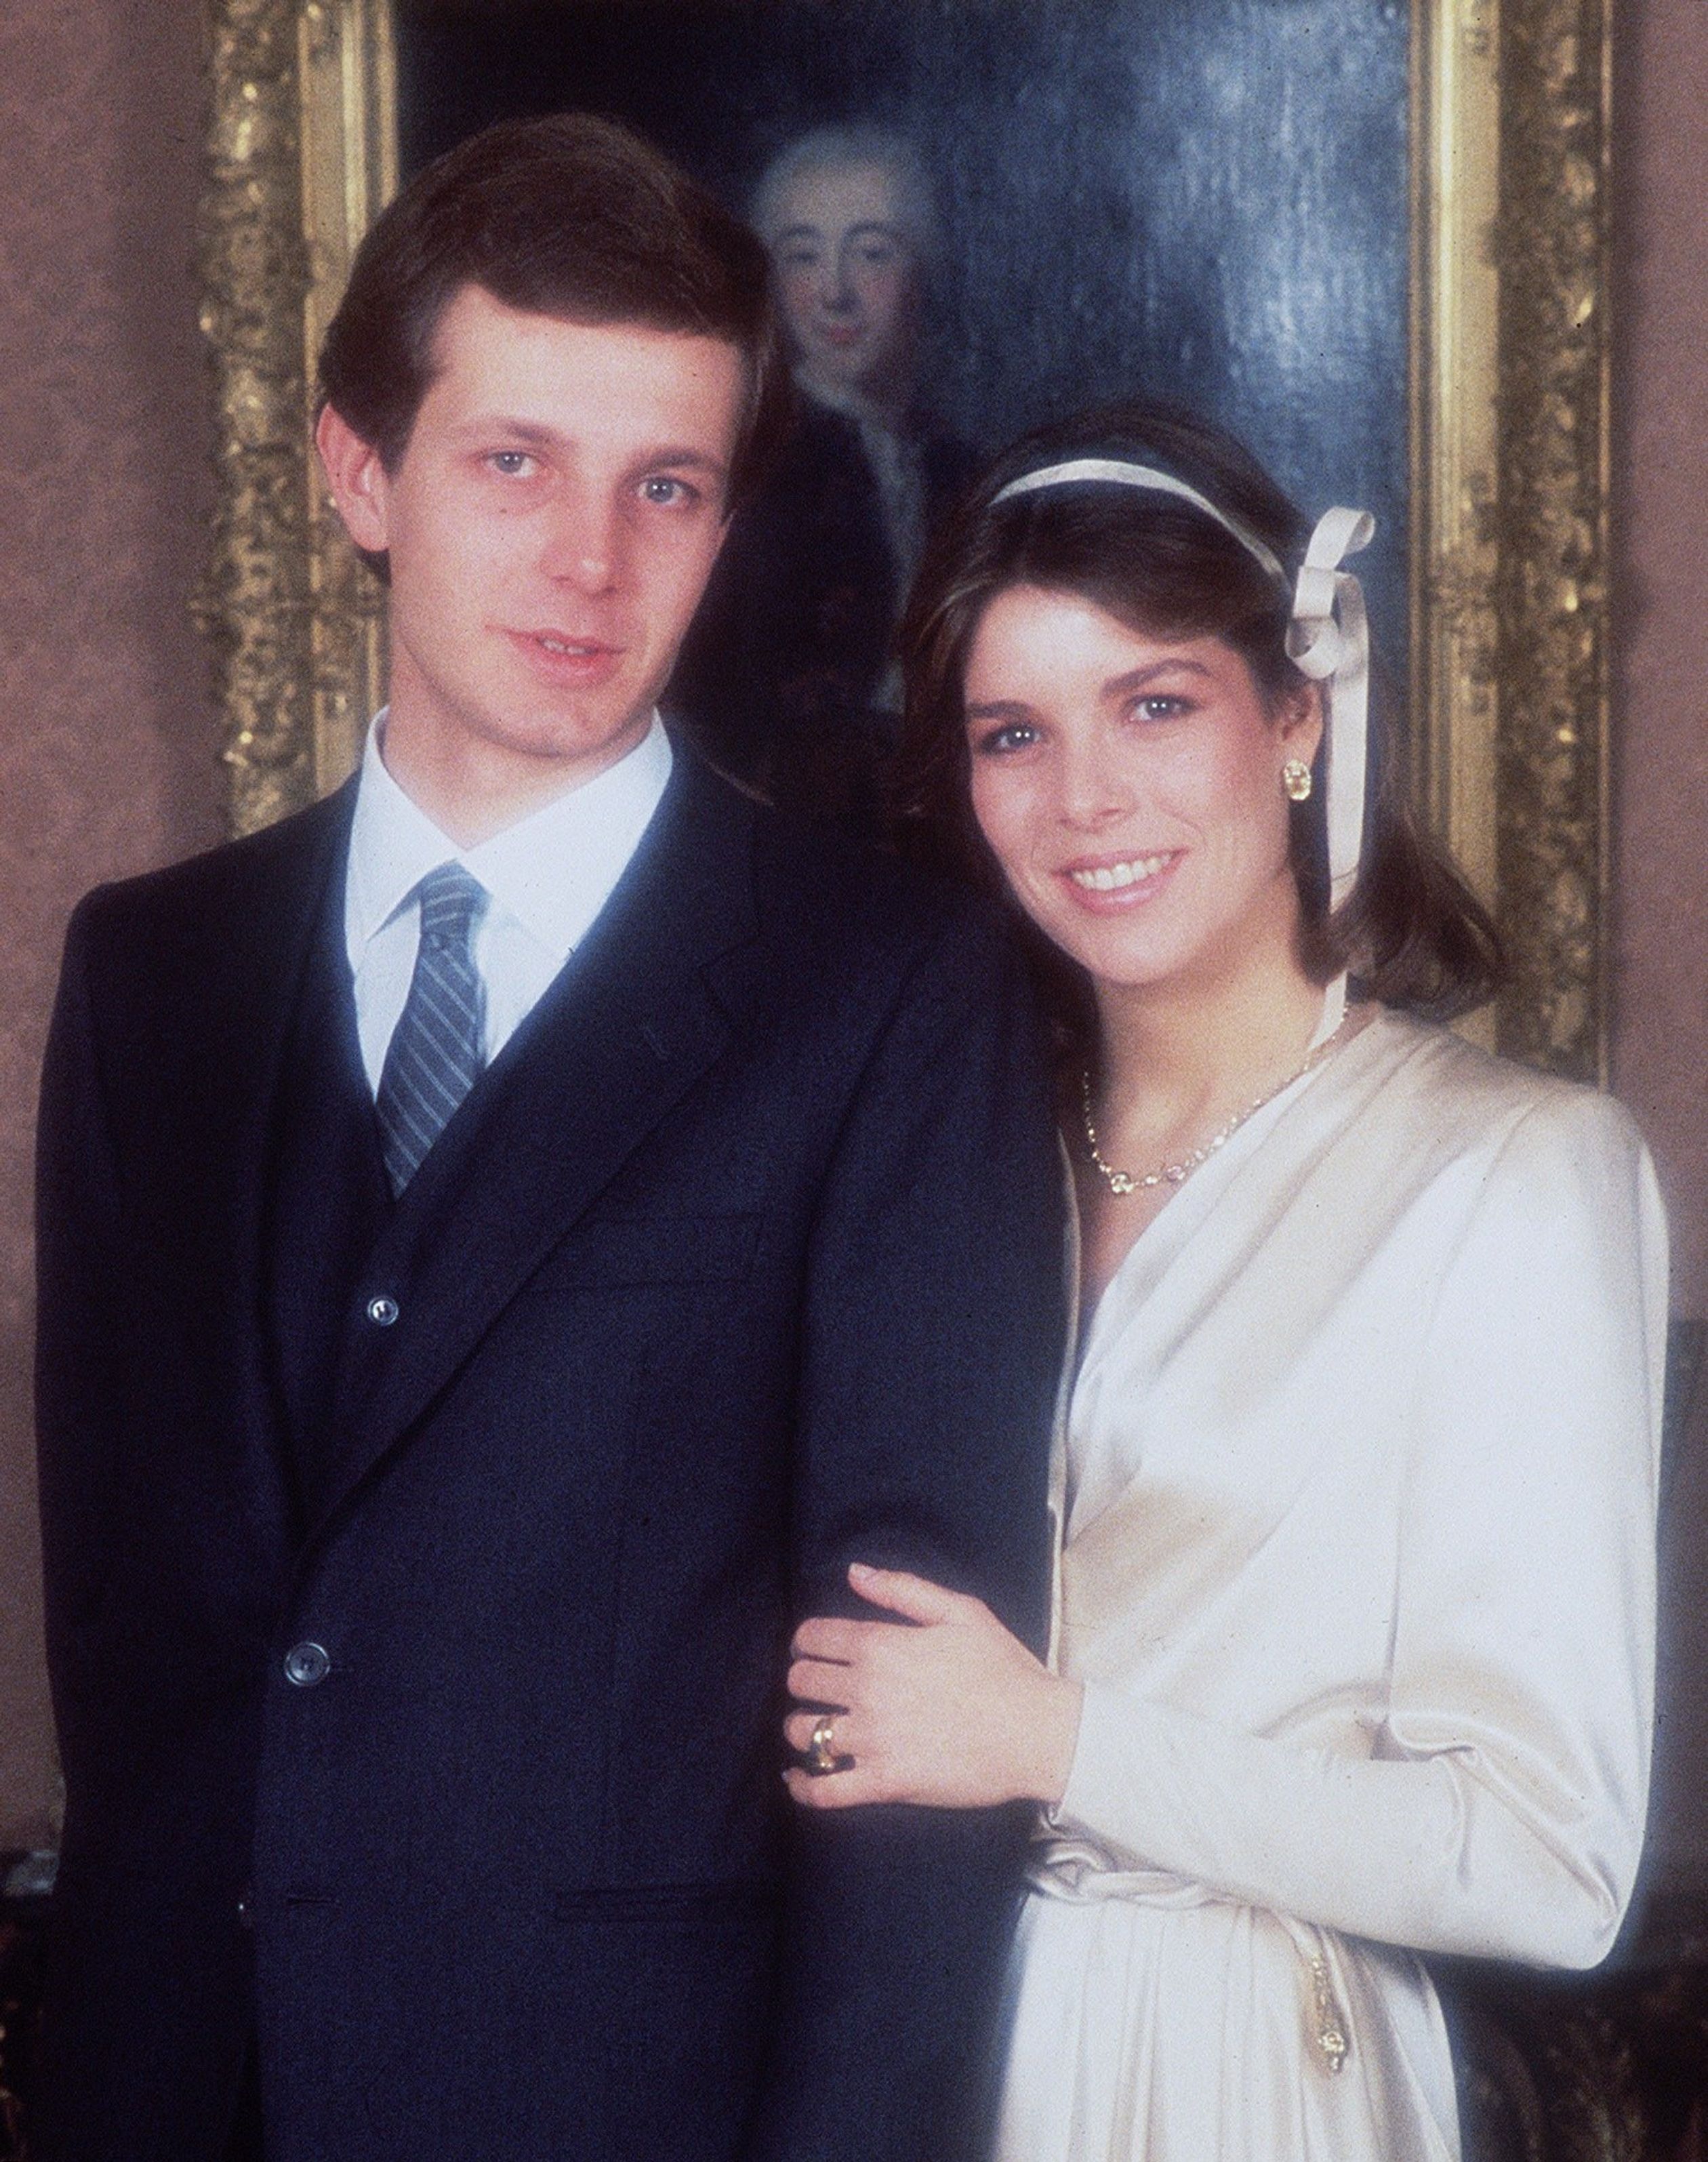 Officiële huwelijksfoto van prinses Caroline en Stefano Casiraghi, 29 december 1983.